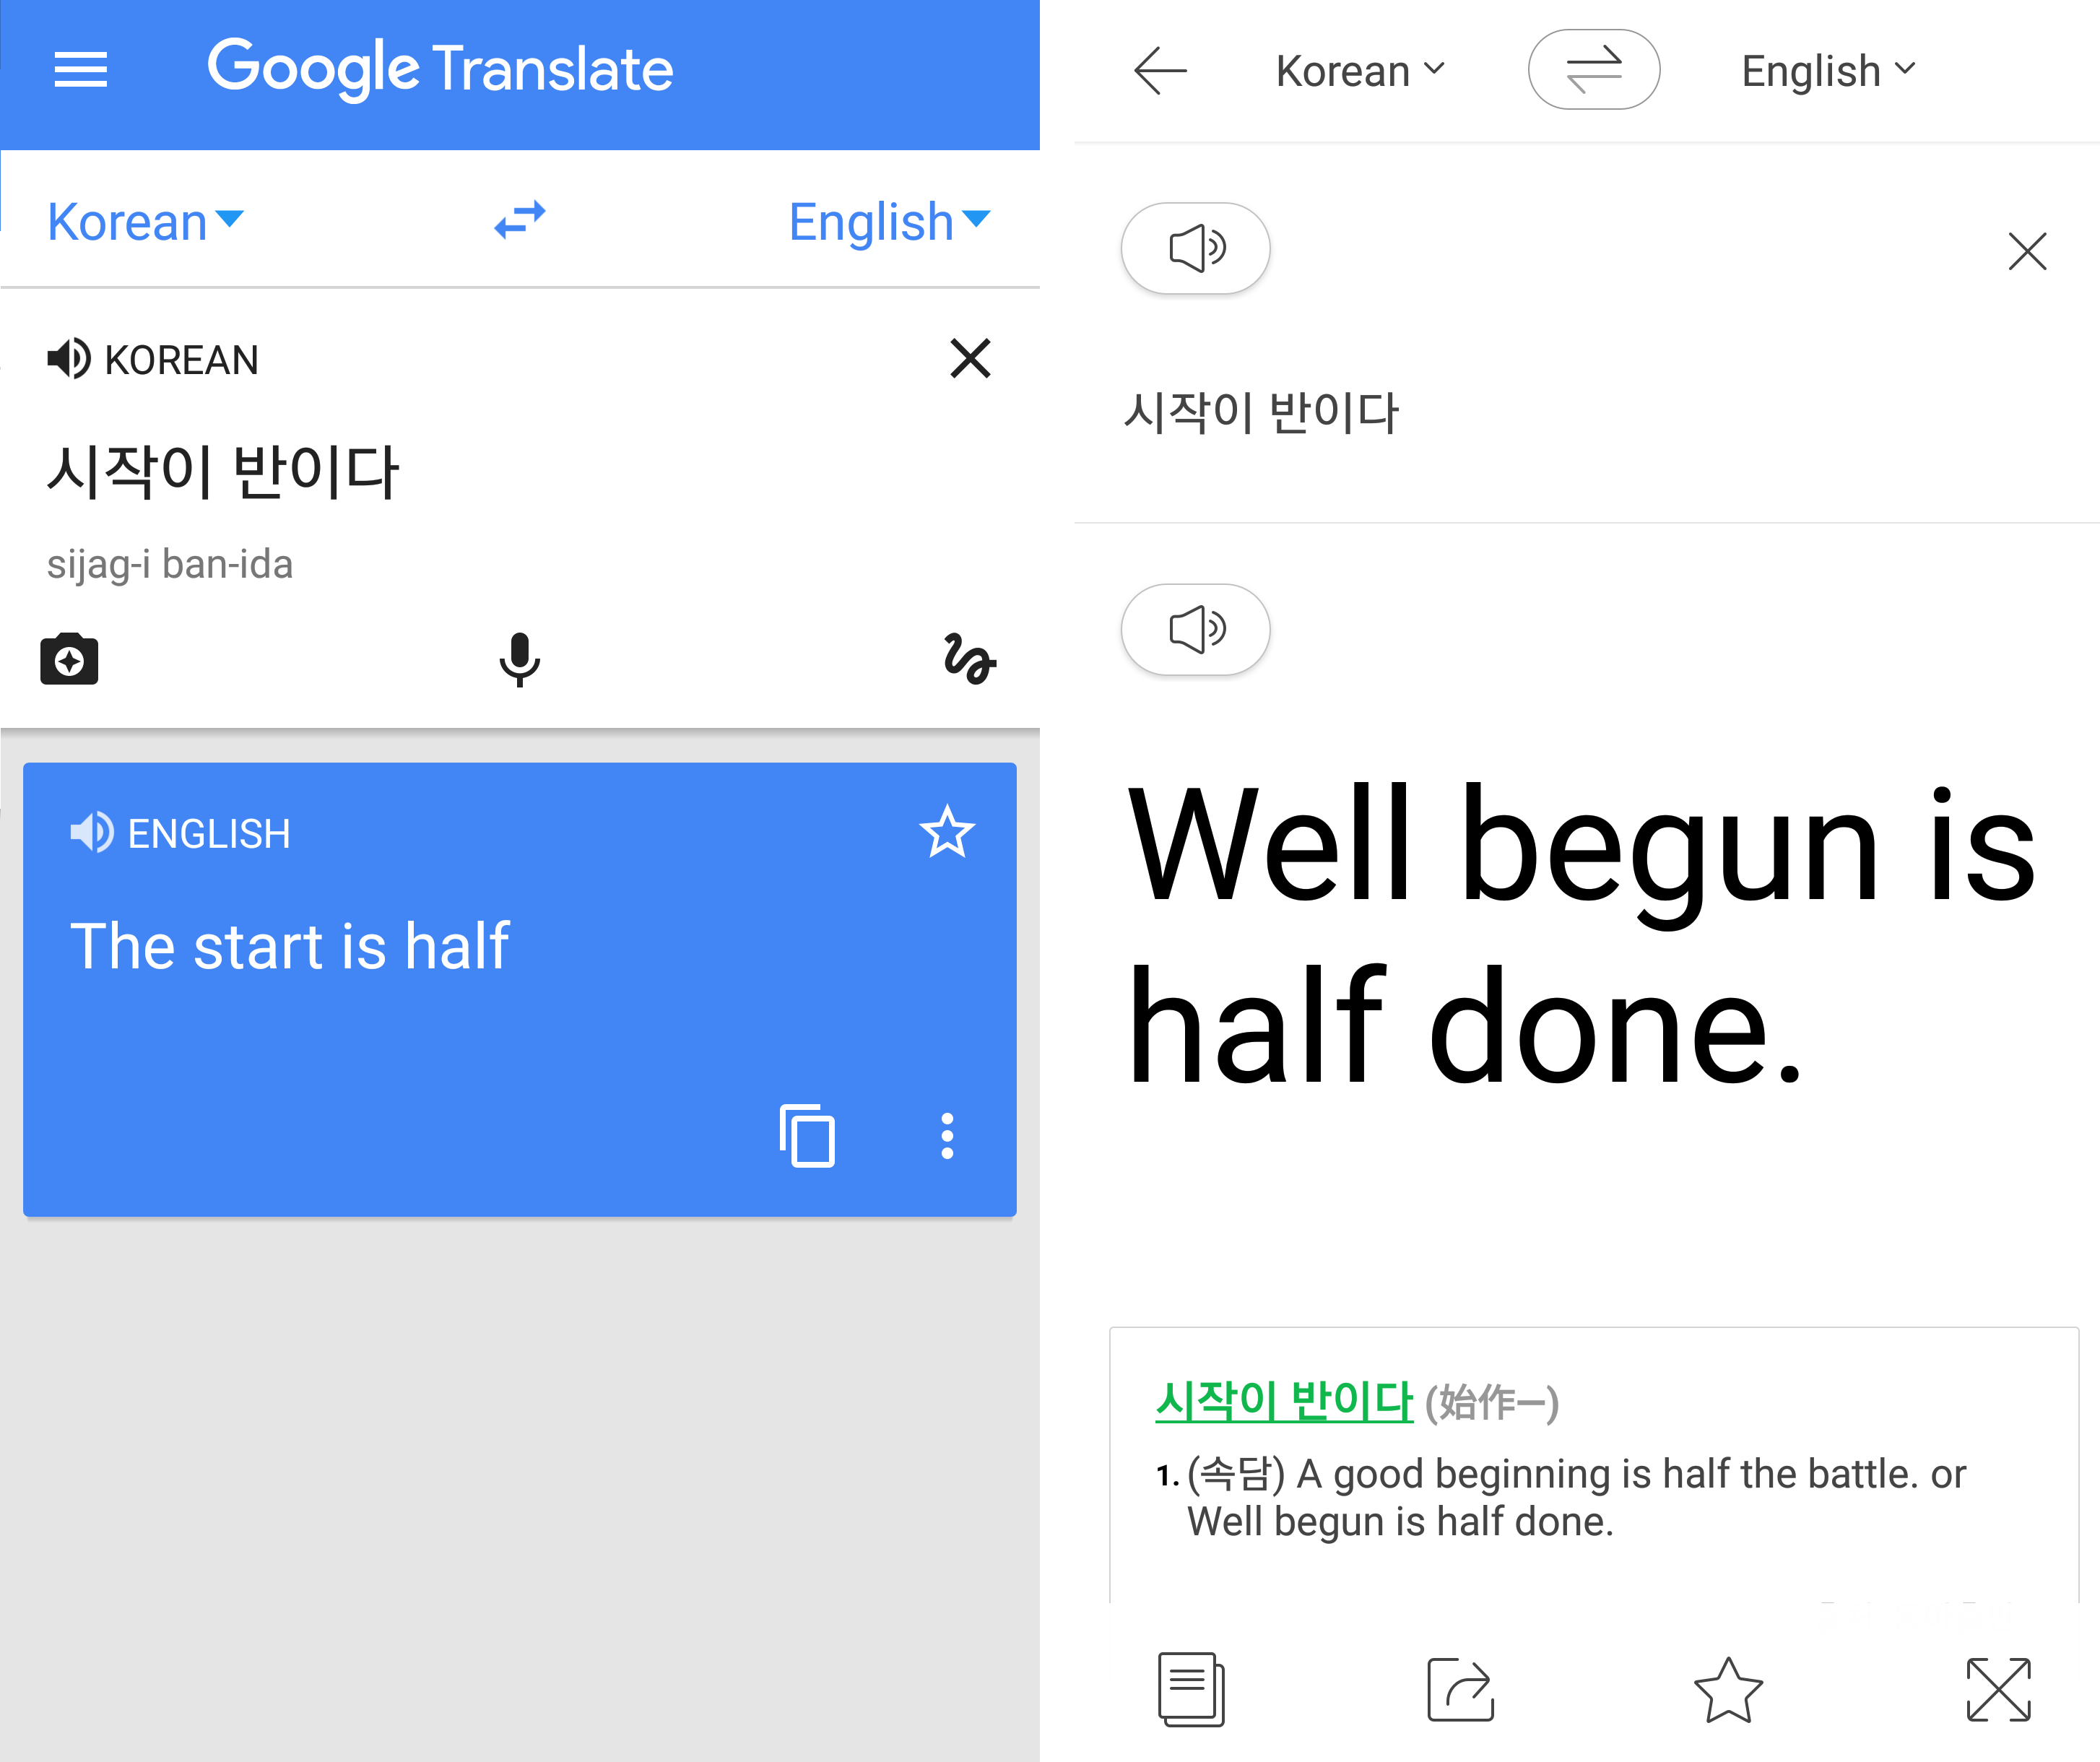 Ì ì£¼ìí´ë¦¬ Ëª¨ë°ì¼ Ì¬ì´í¸ Battle Of The Korean Translation Apps Google Translate Vs Papago Mars translation provides you the best korean translation services at affordable rates. the jeju weekly